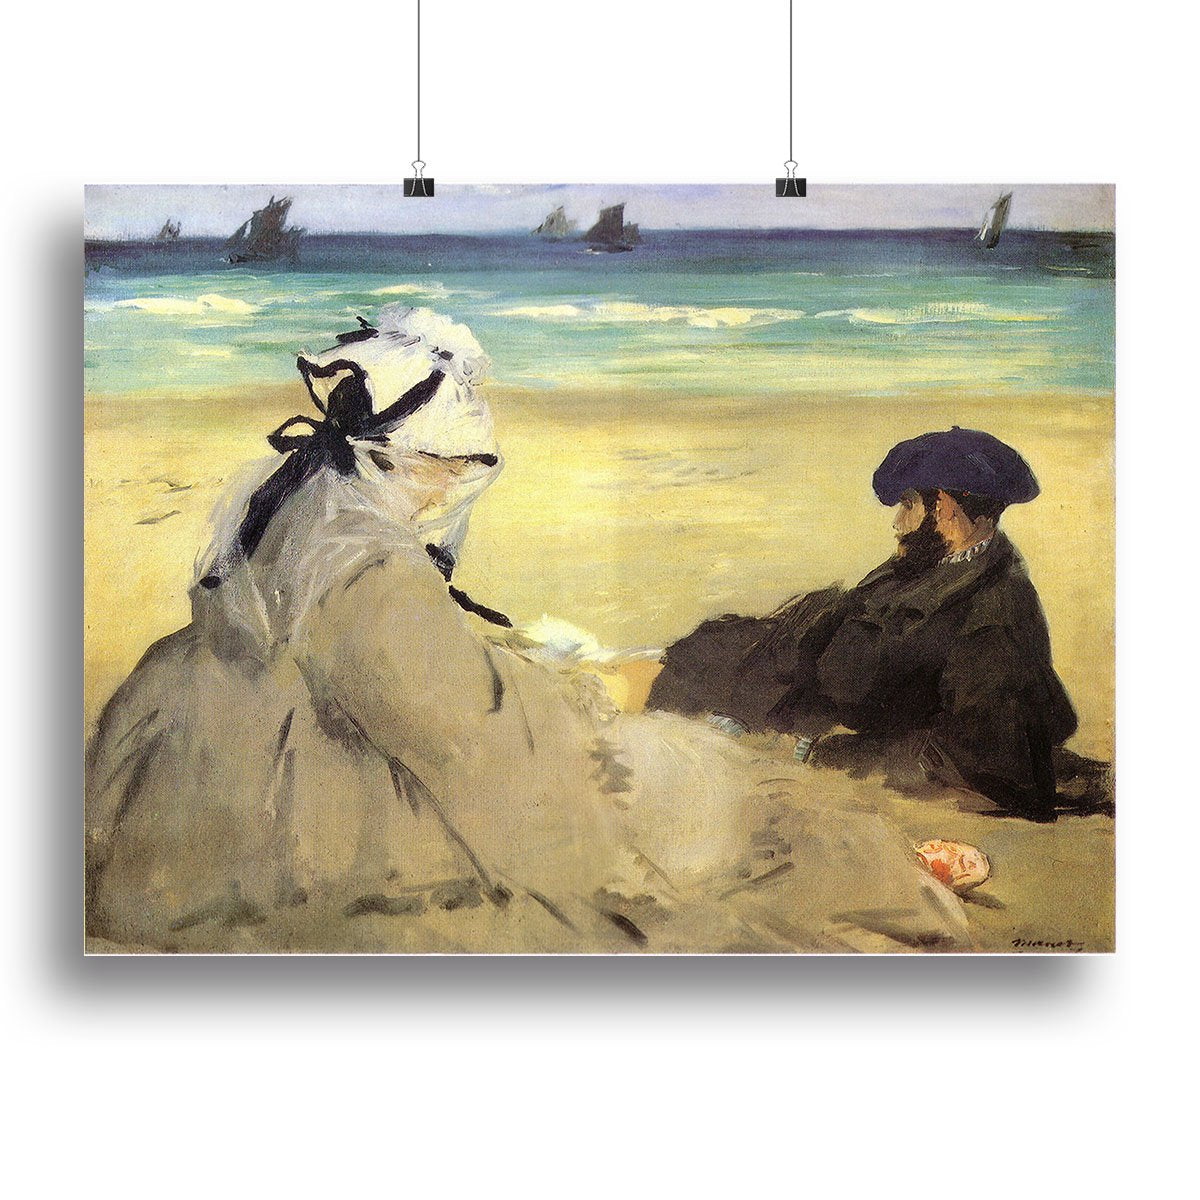 Sur la plage 1873 by Manet Canvas Print or Poster